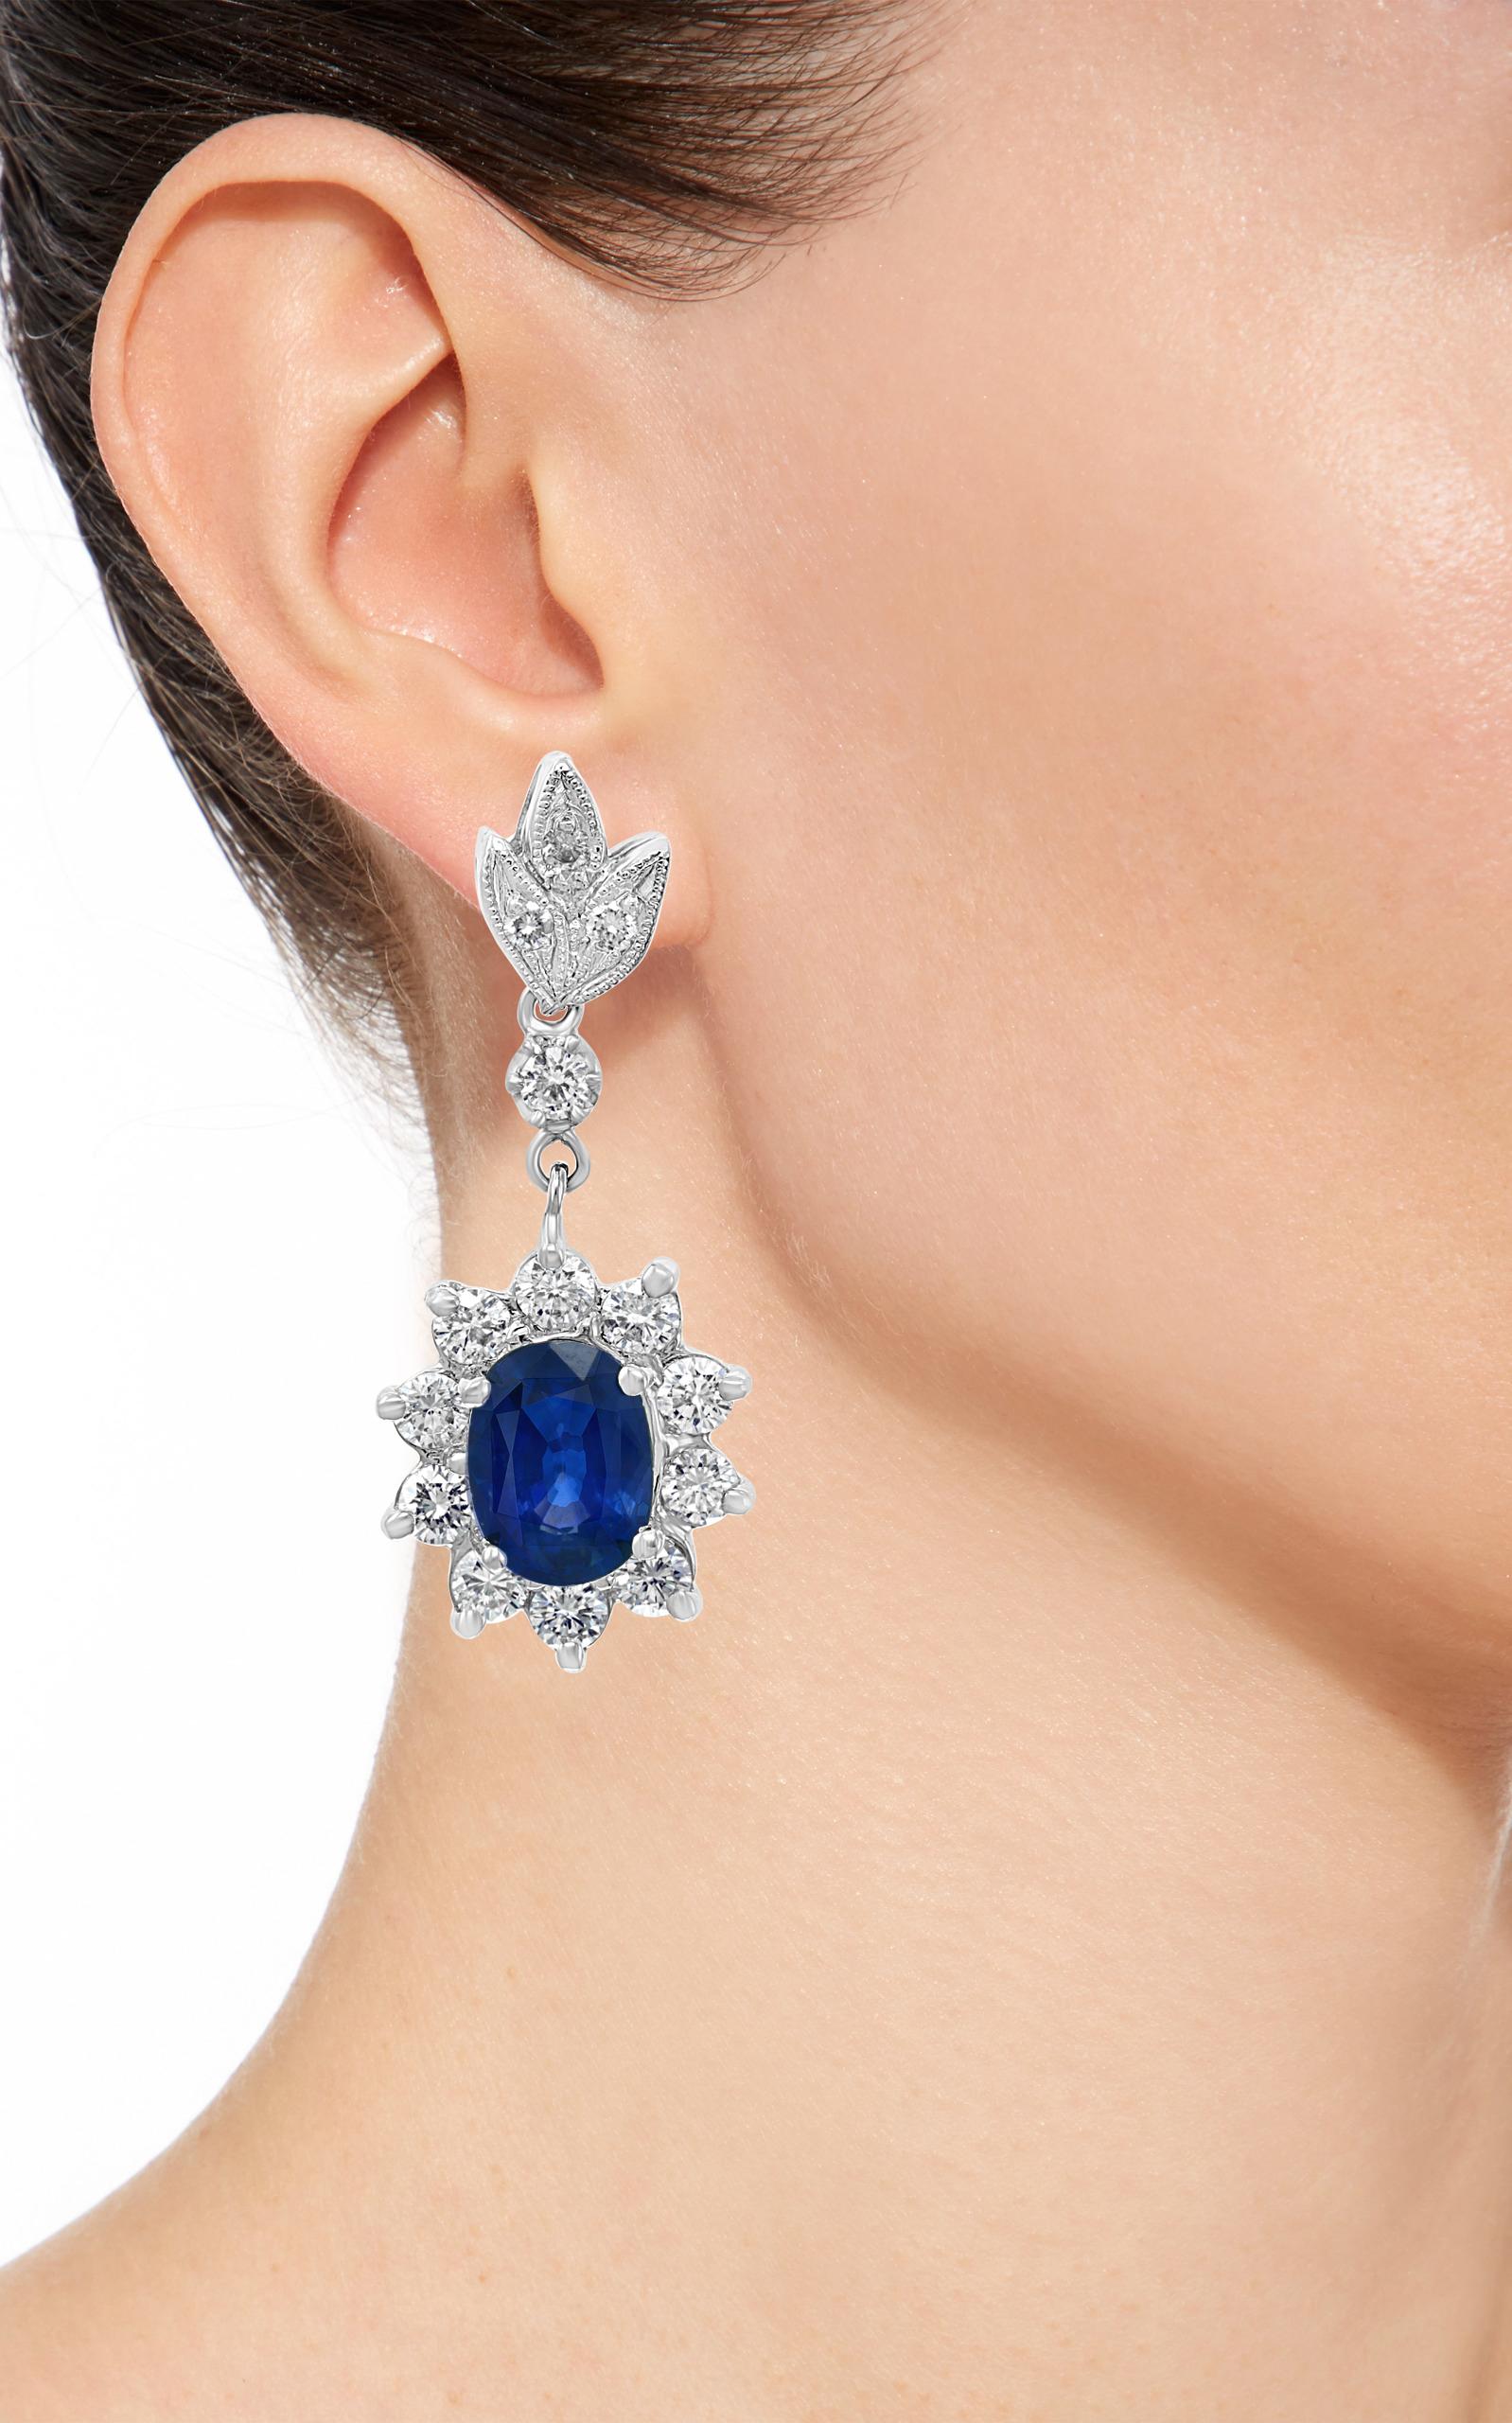 Oval Cut 2.5 Carat Natural Sapphire & 2.0 Carat Diamond Hanging/Drop Earring 14Karat Gold